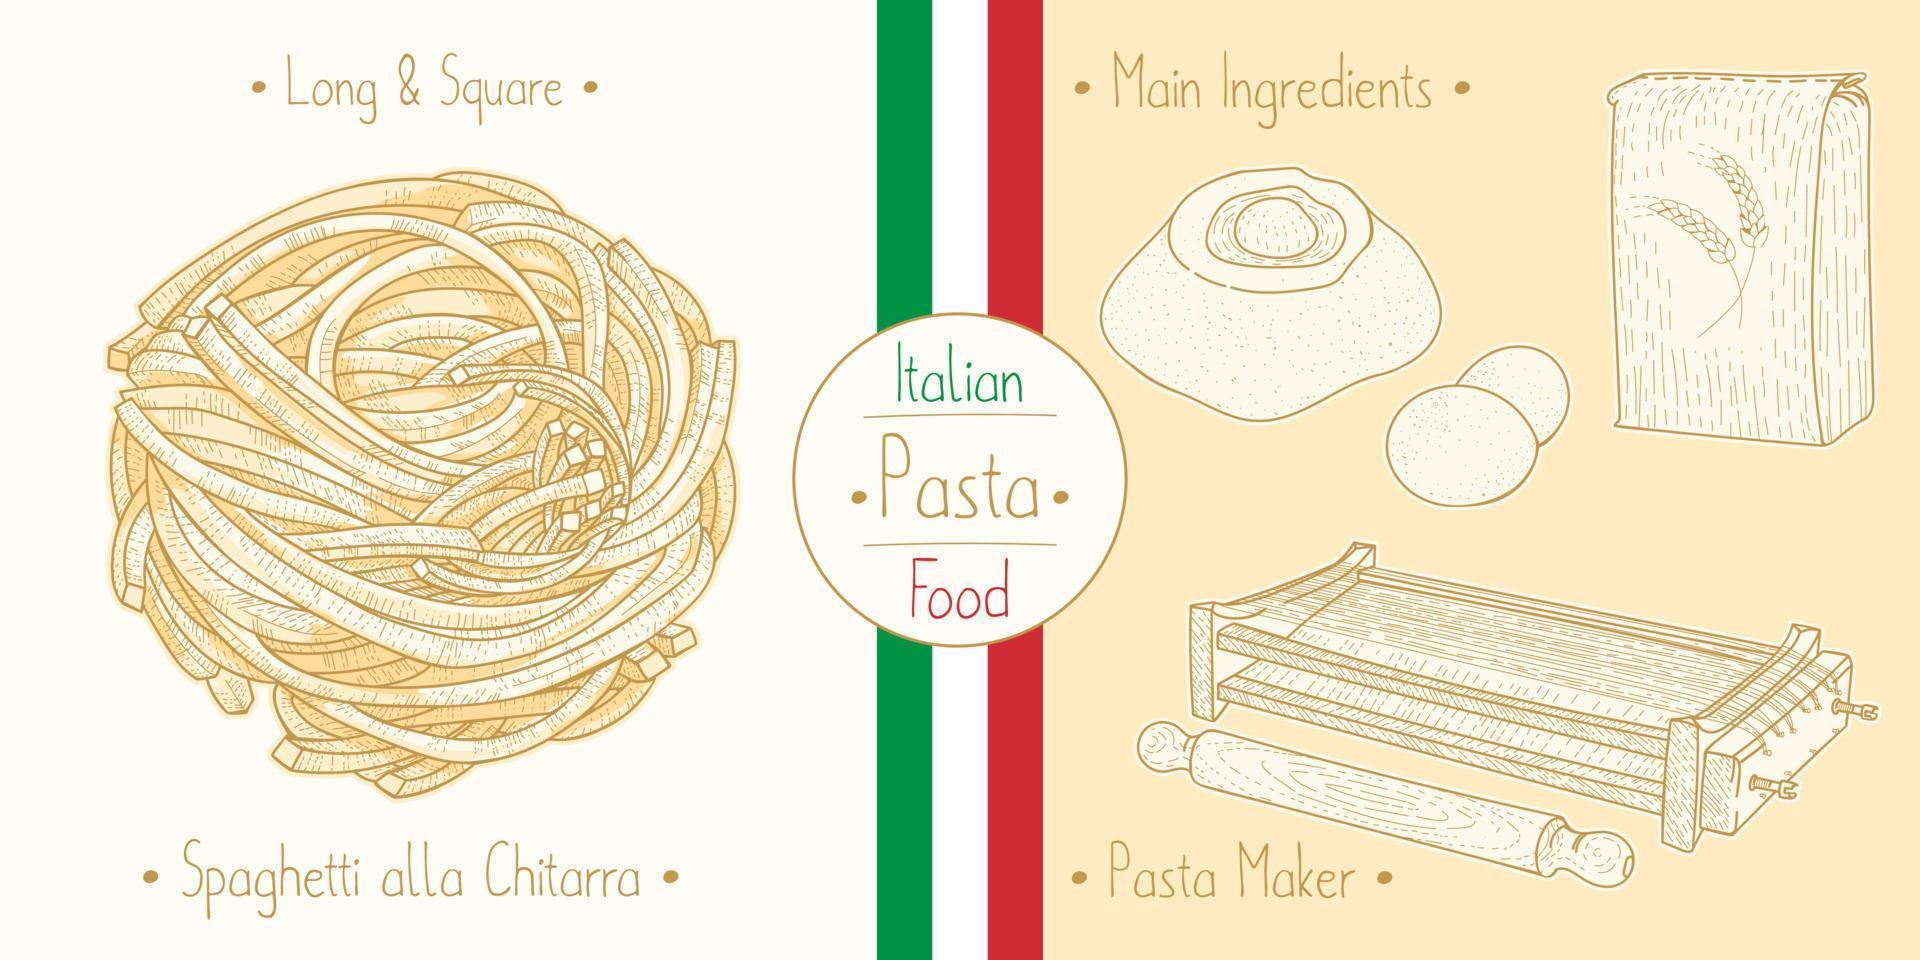 cucinare cibo italiano spaghetti chitarra alias tonnarelli pasta quadrata e ingredienti principali e attrezzature per pastai, illustrazione di schizzi in stile vintage vettore